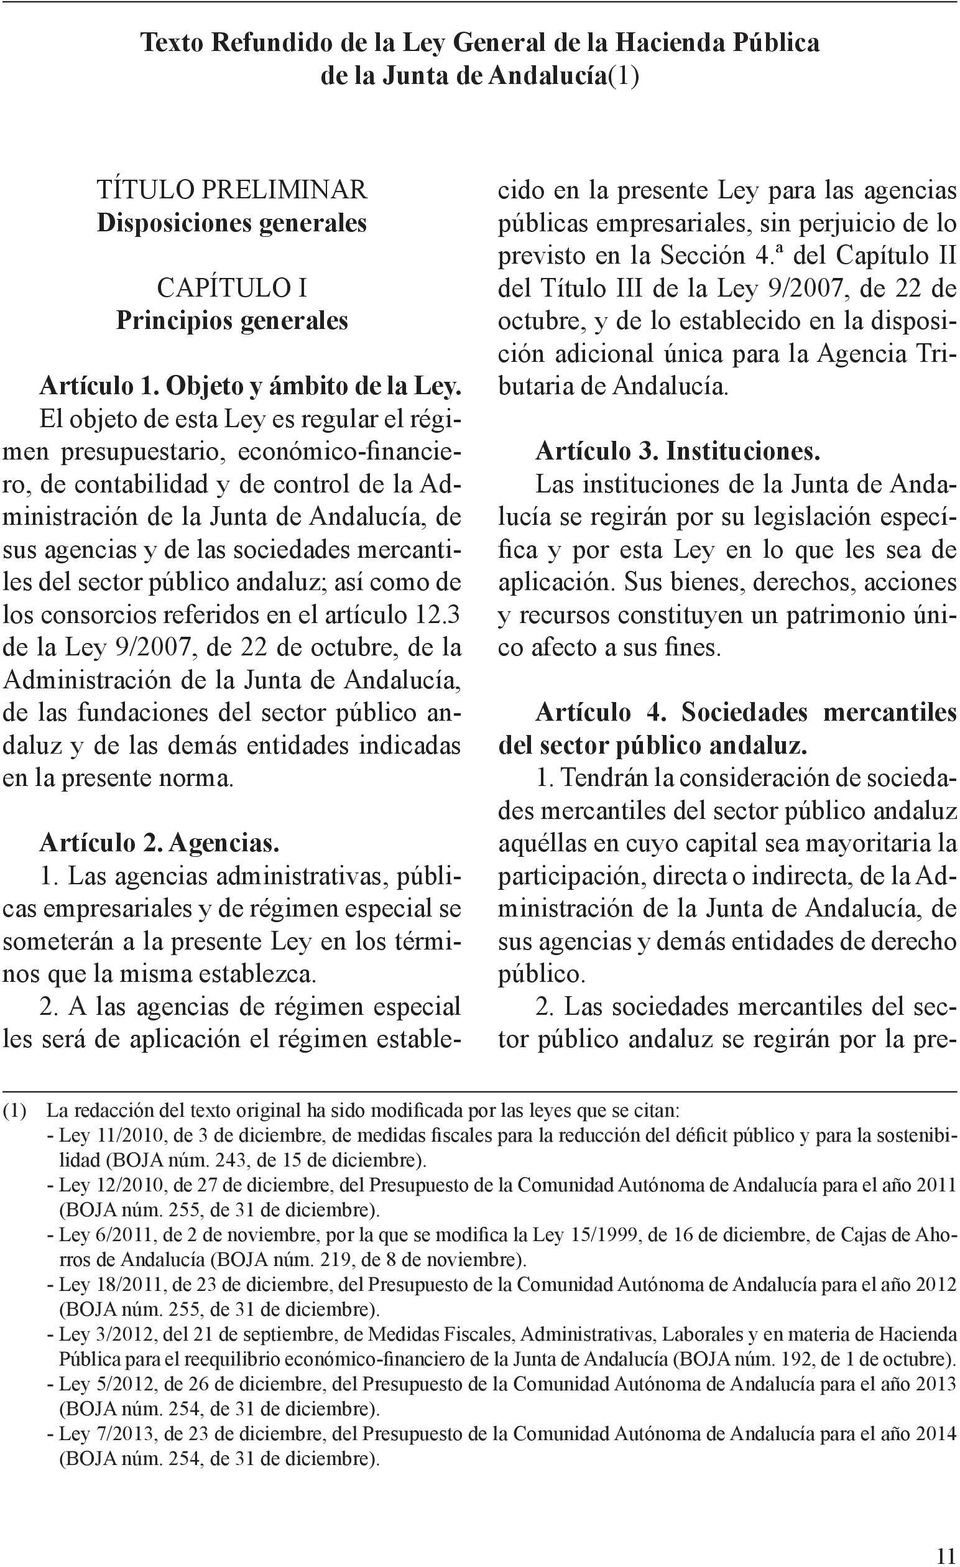 mercantiles del sector público andaluz; así como de los consorcios referidos en el artículo 12.